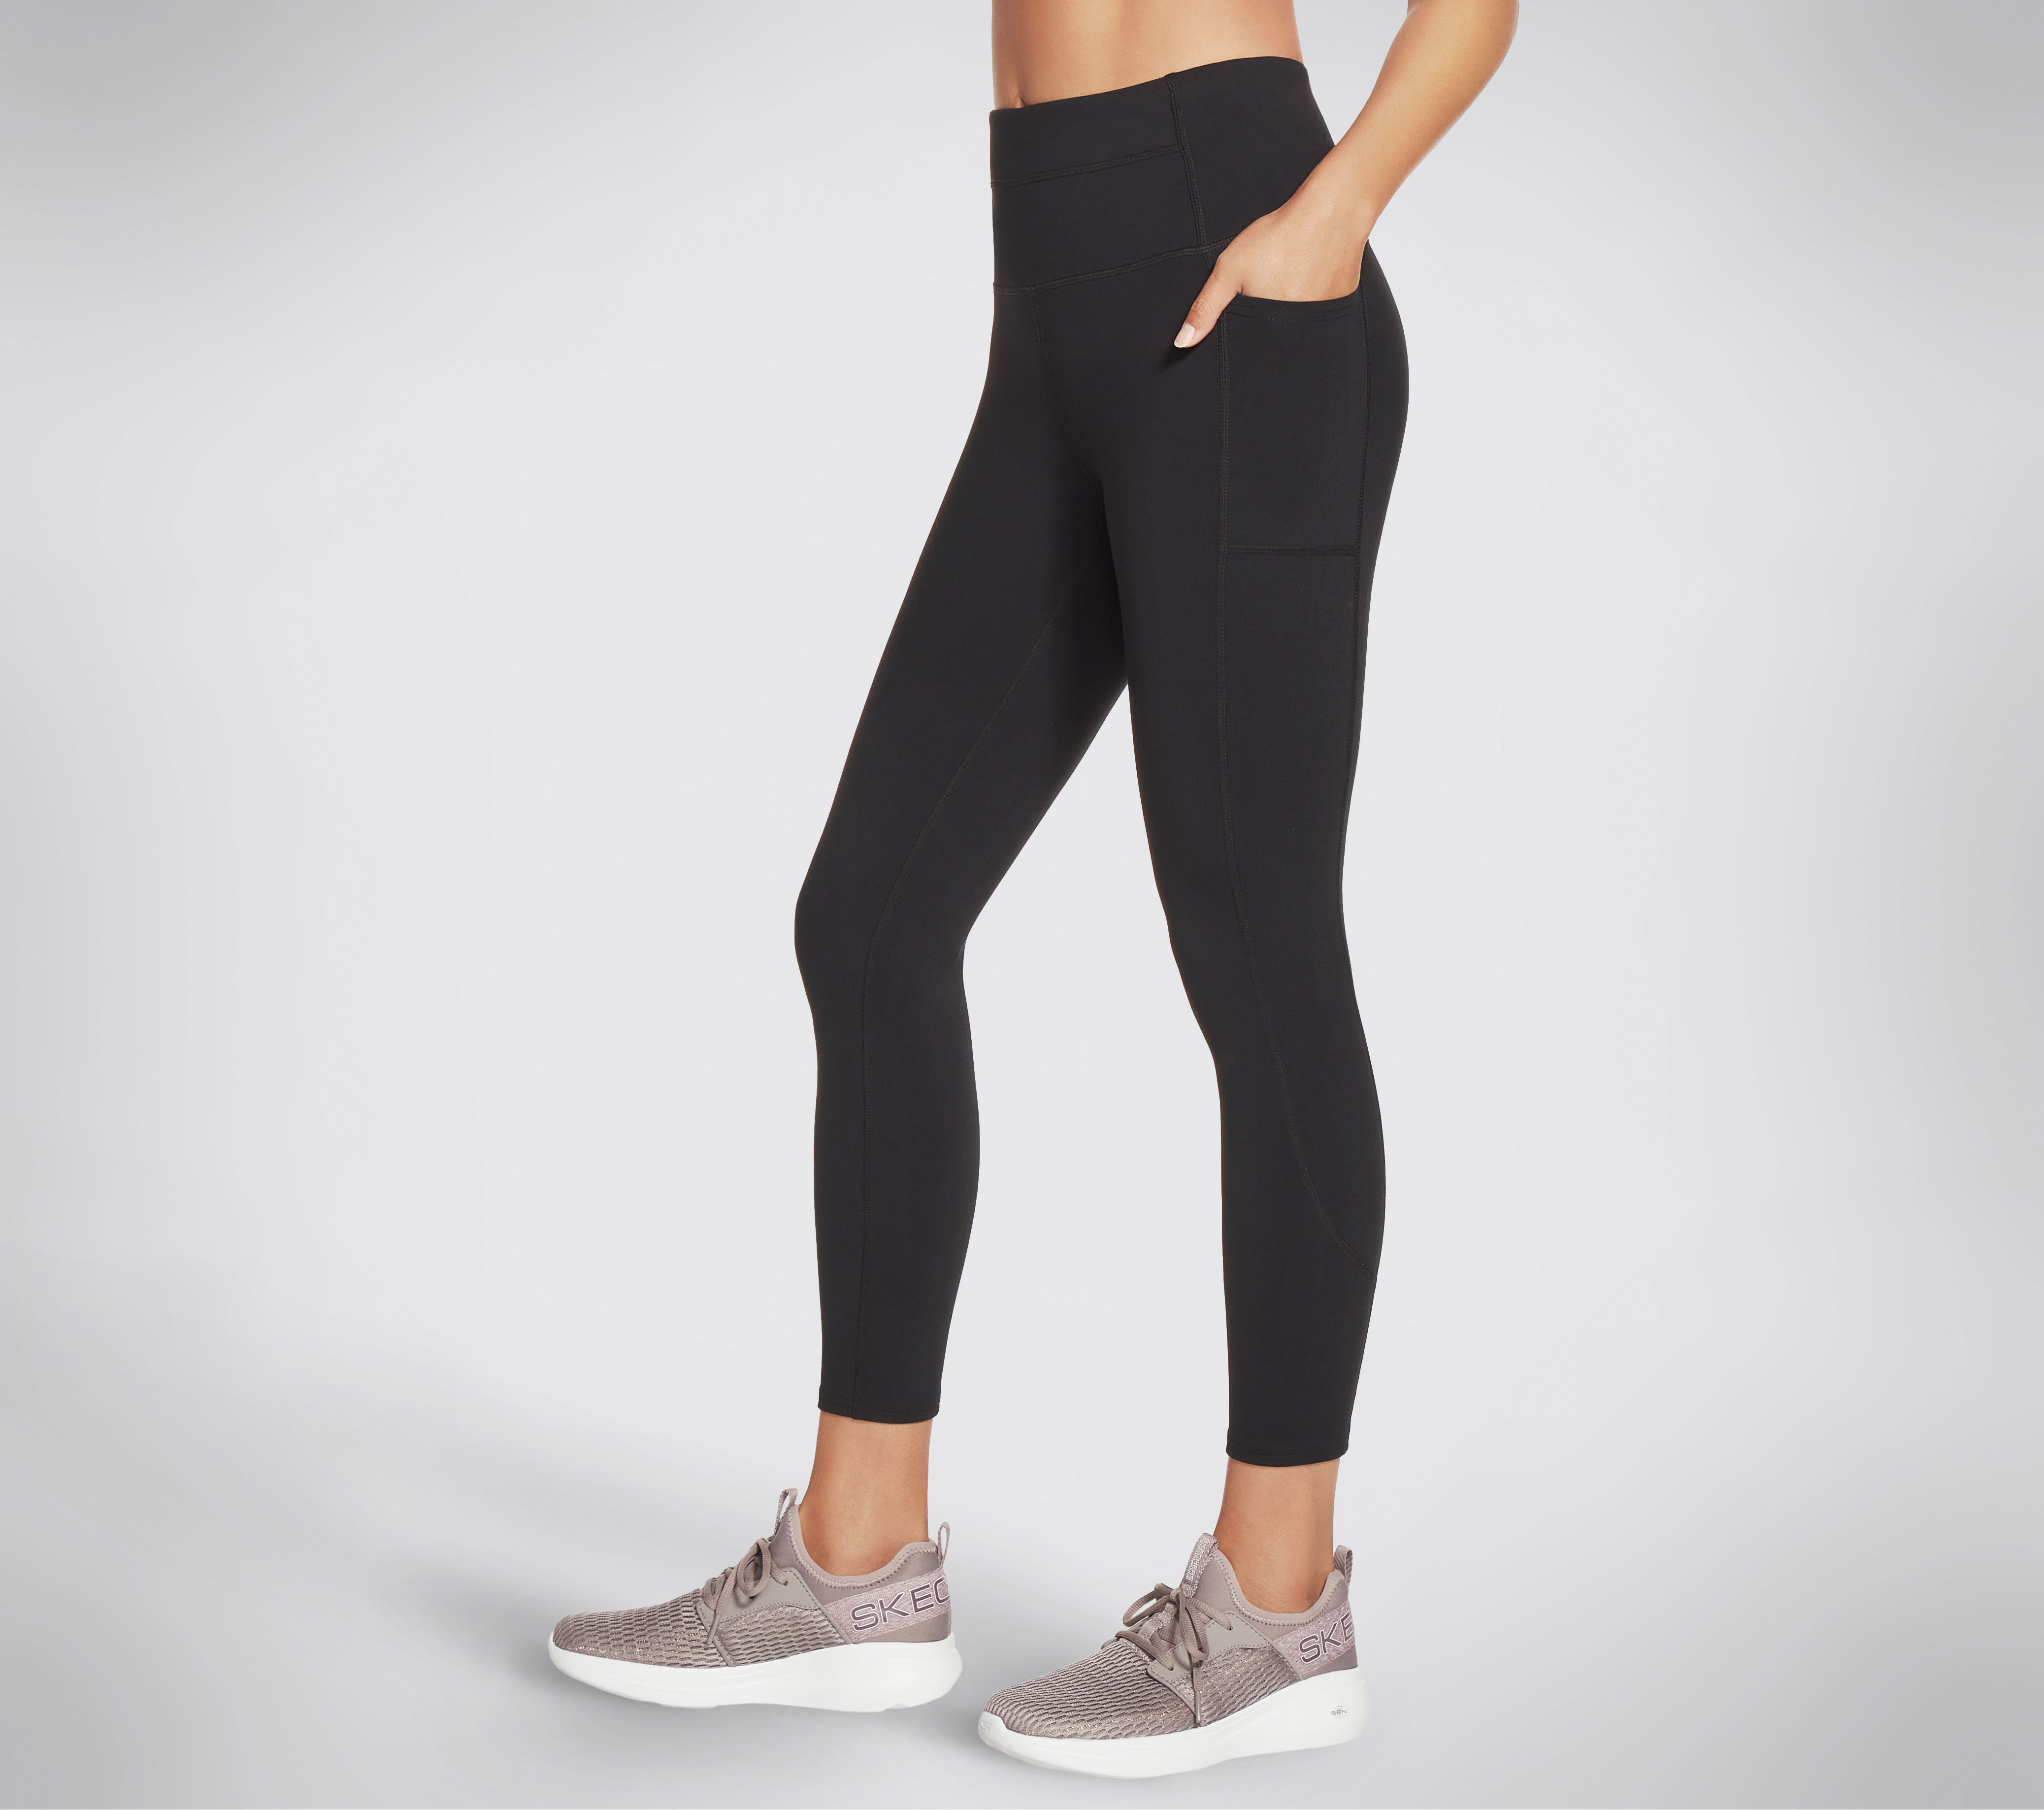 Buy Skechers womens dot high waisted 7 8 leggings black Online